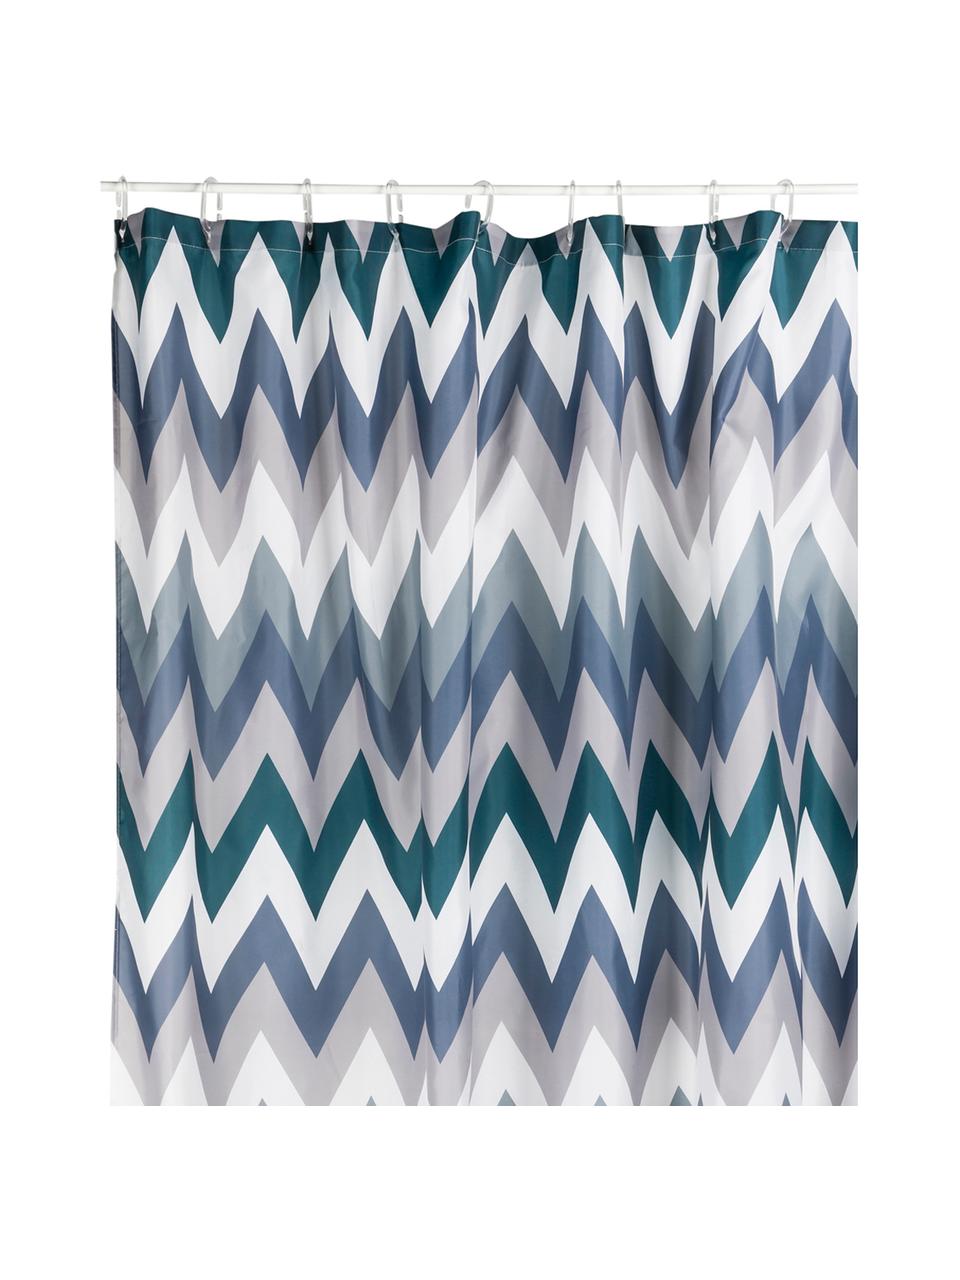 Tenda da doccia con motivo a zigzag Hanneke, 100% poliestere stampato
Idrorepellente non impermeabile, Blu, grigio, bianco, verde, Larg. 180 x Lung. 200 cm